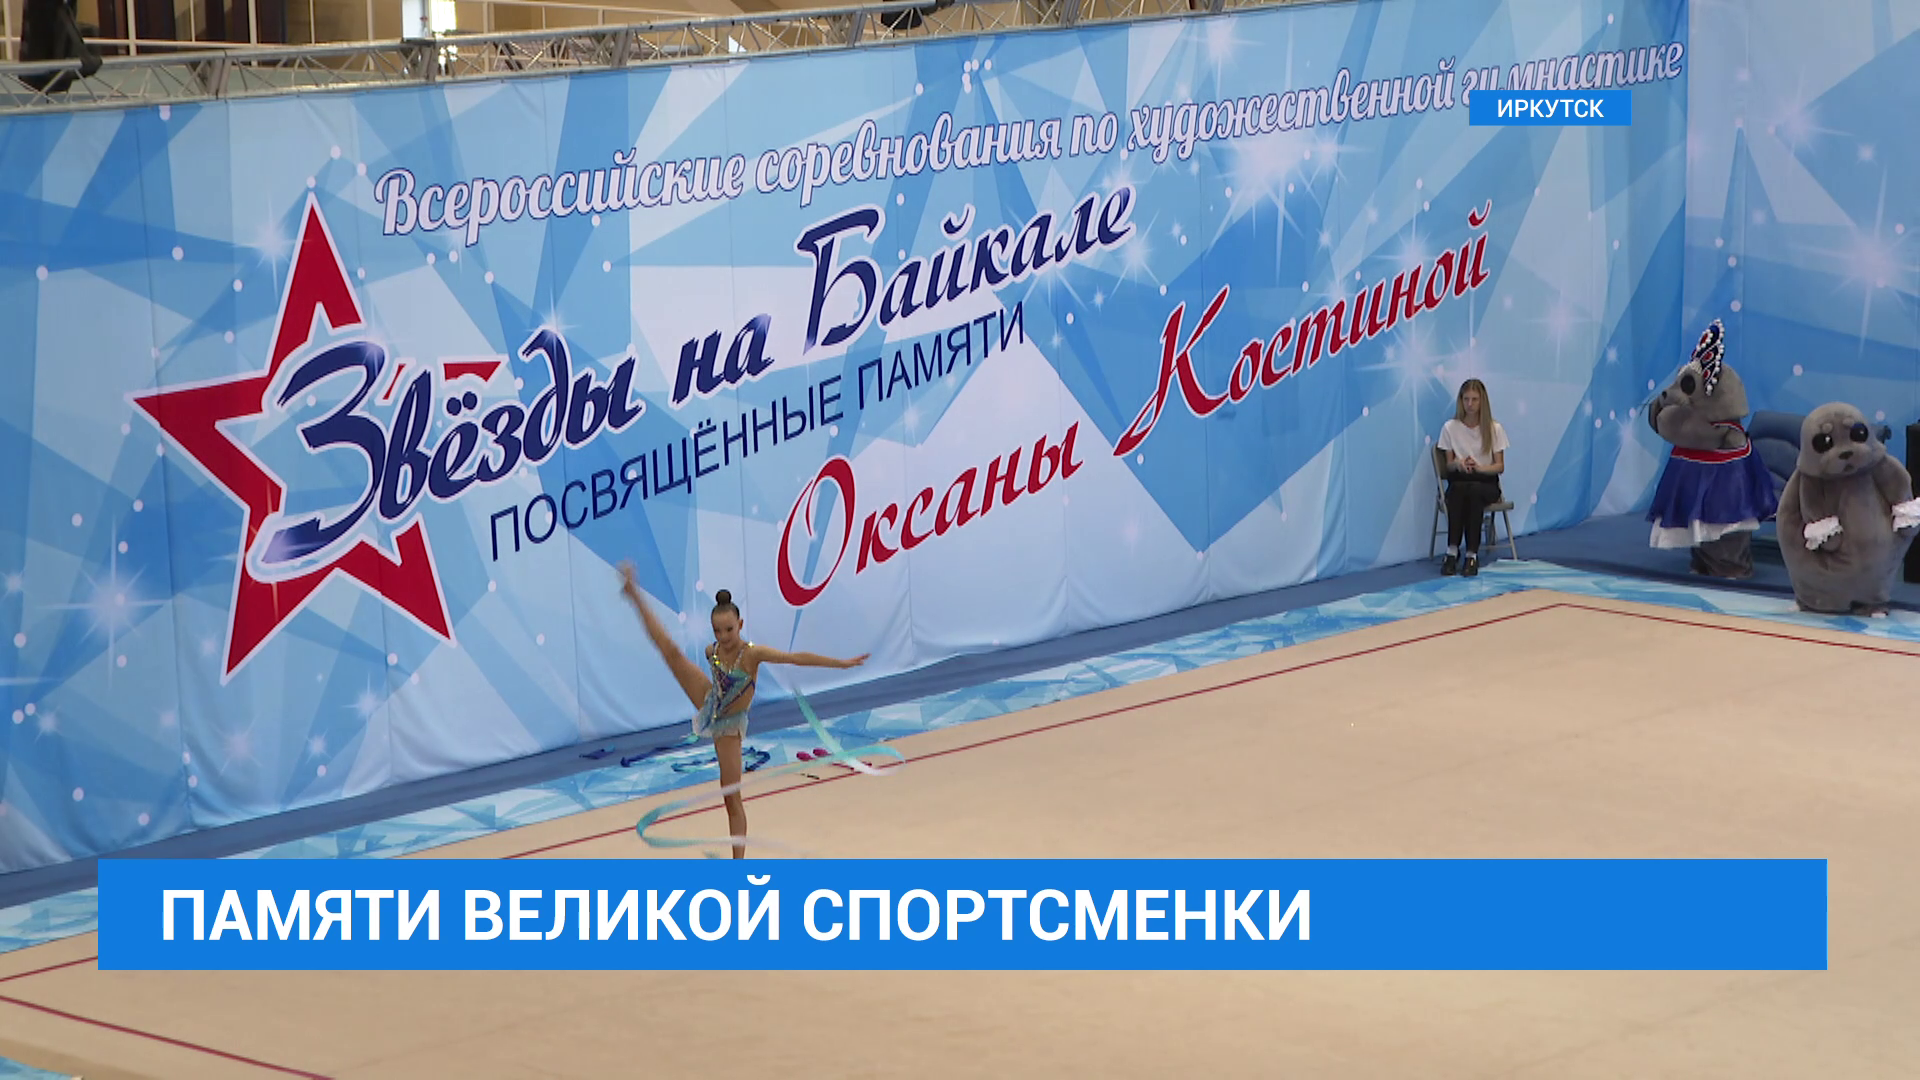 Всероссийские соревнования по художественной гимнастике памяти чемпионки мира Оксаны Костиной